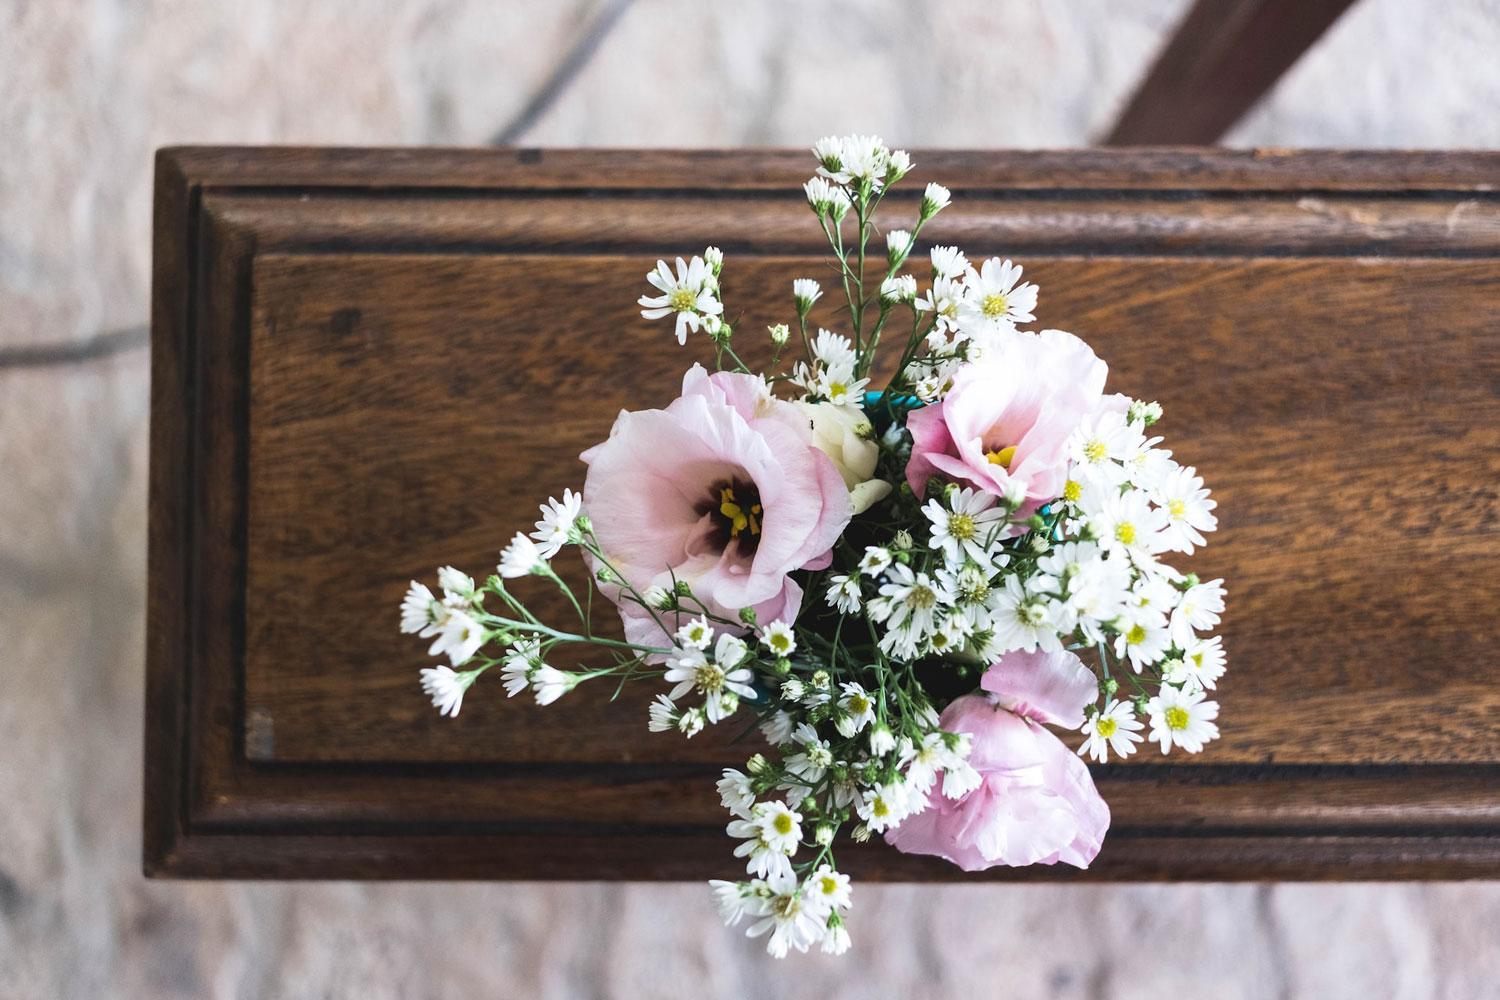 flores rosas em cima de um caixão durante o velório de um ente querido